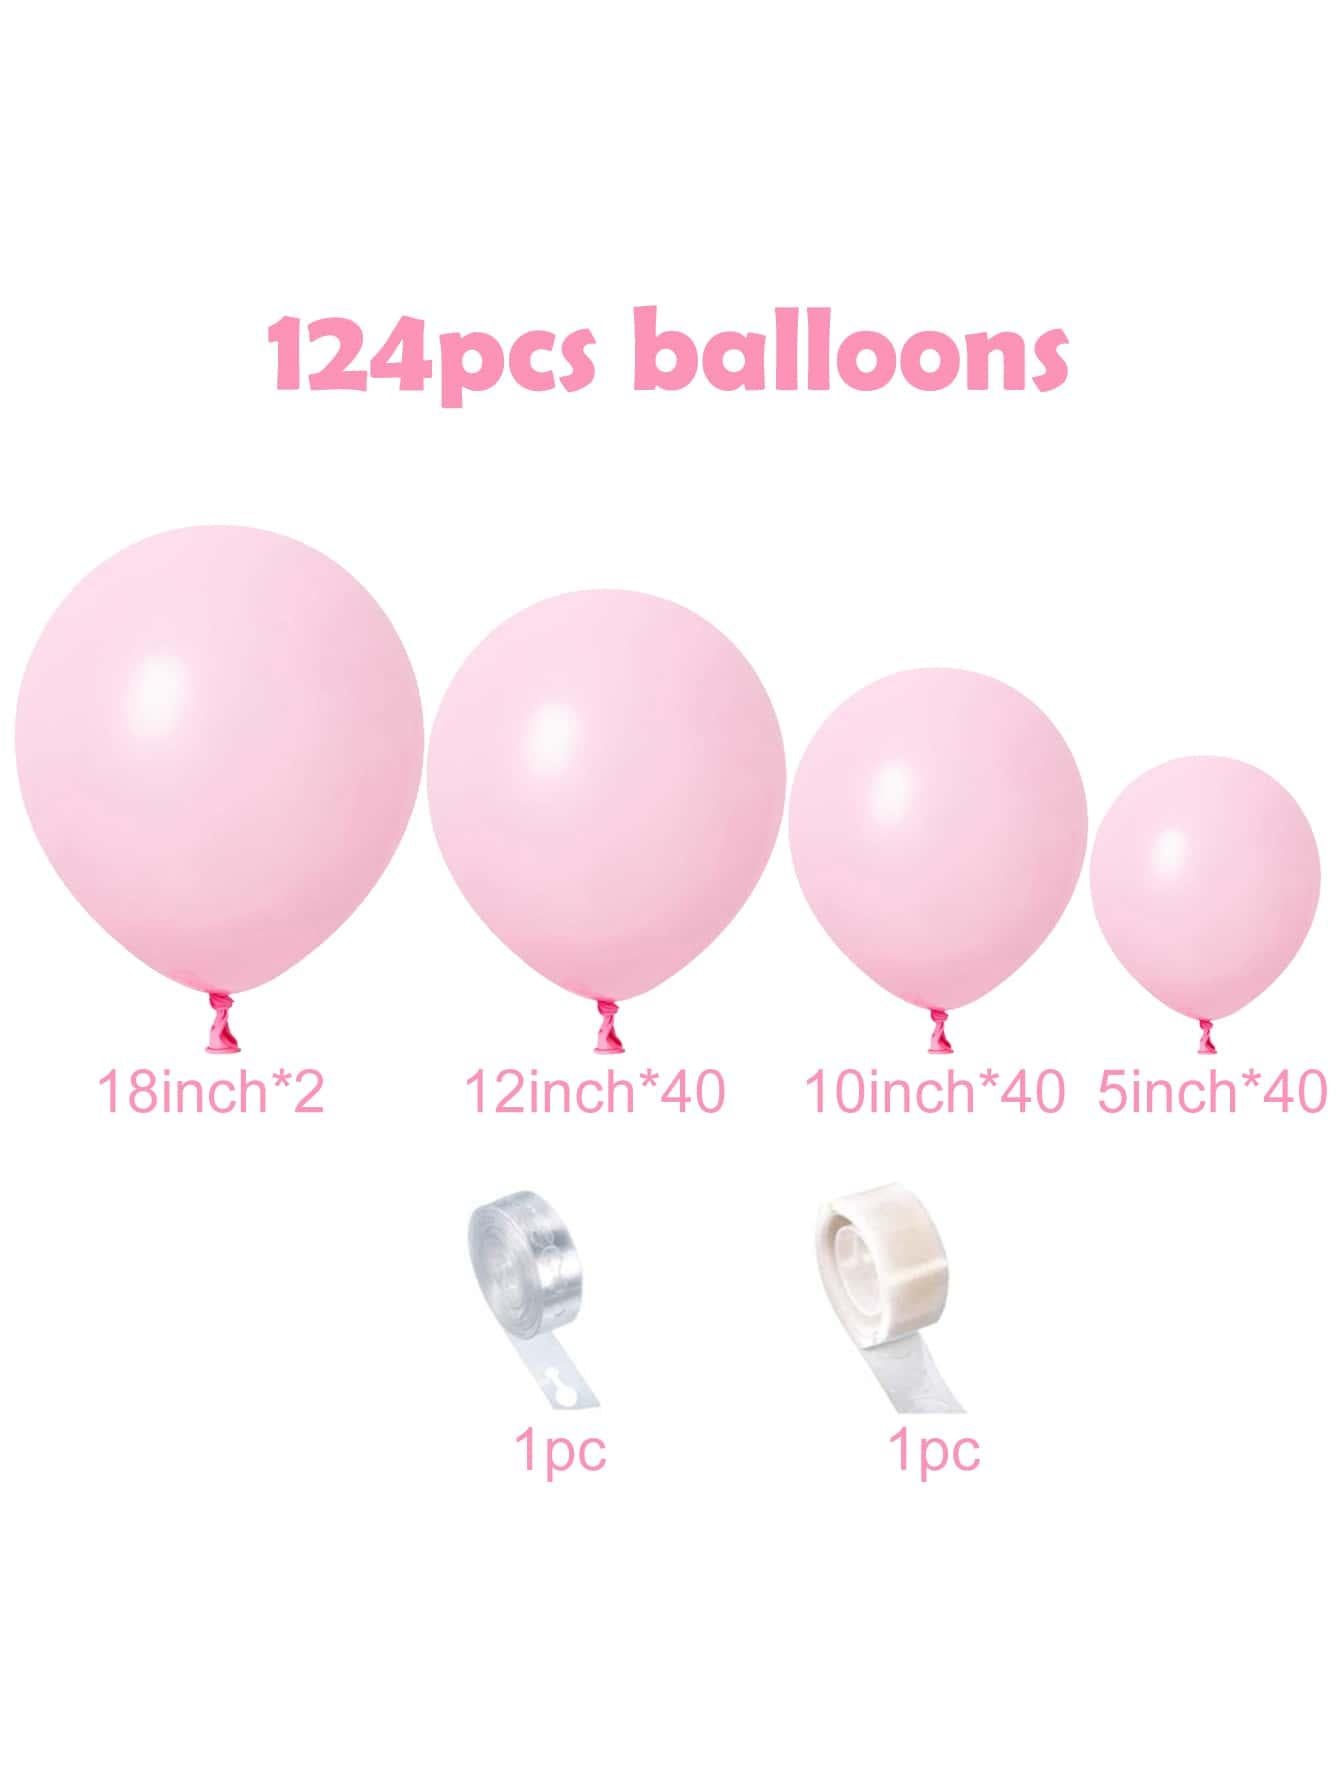 124pcs Solid Color Balloon Chain Set - Decotree.co Online Shop